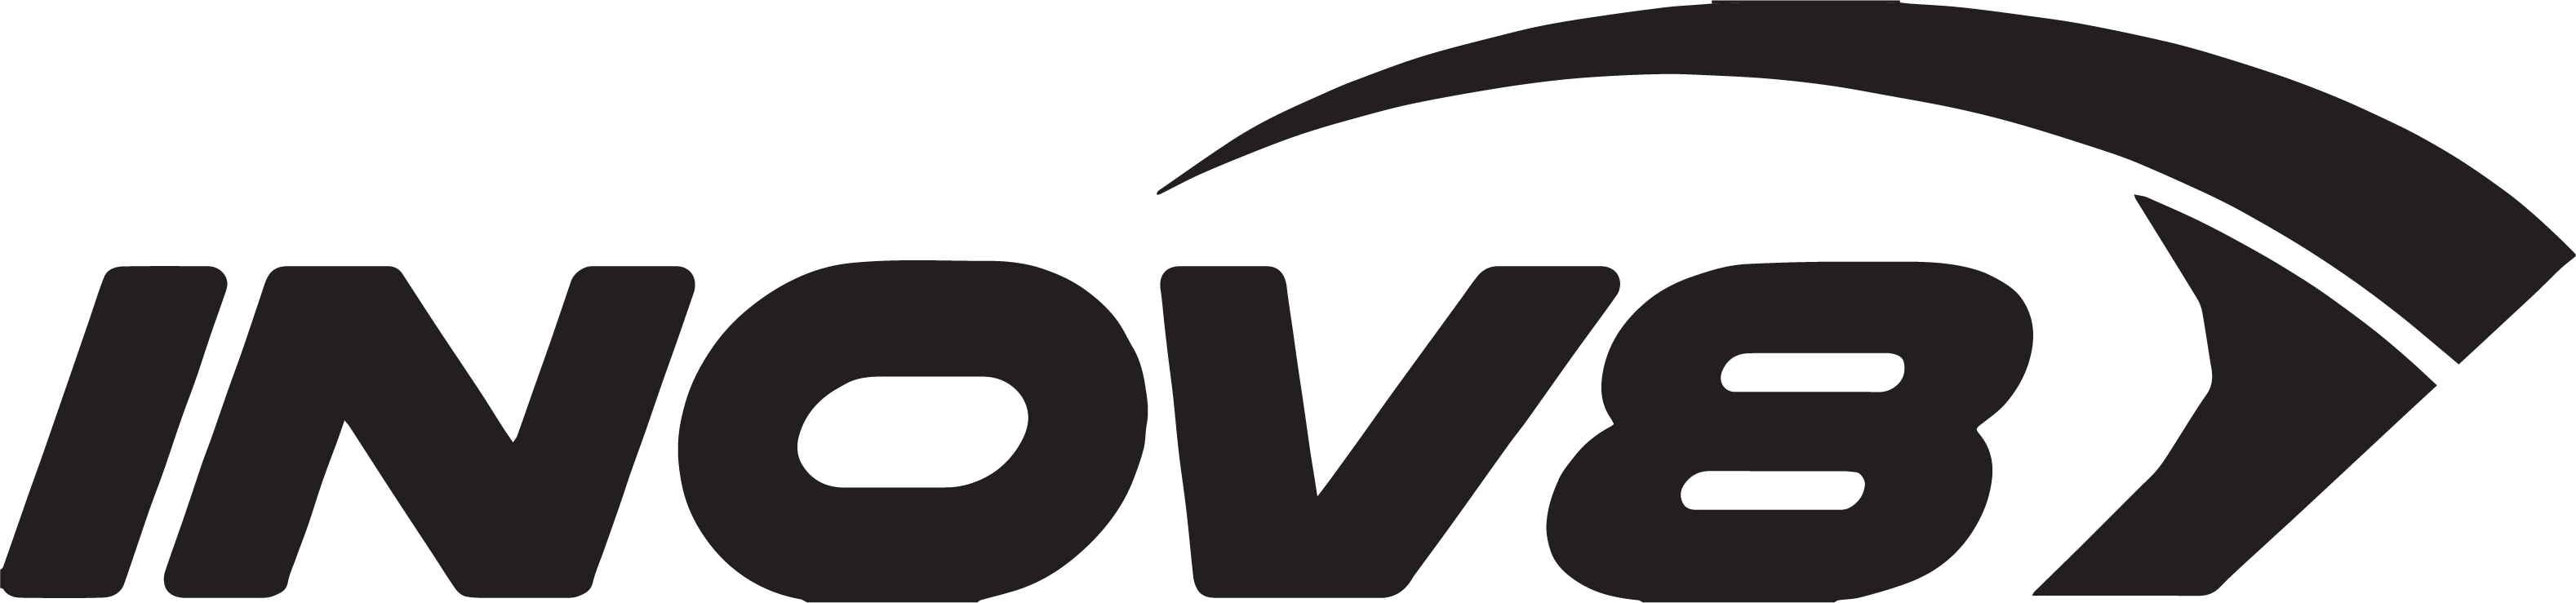 INOV8, Inc